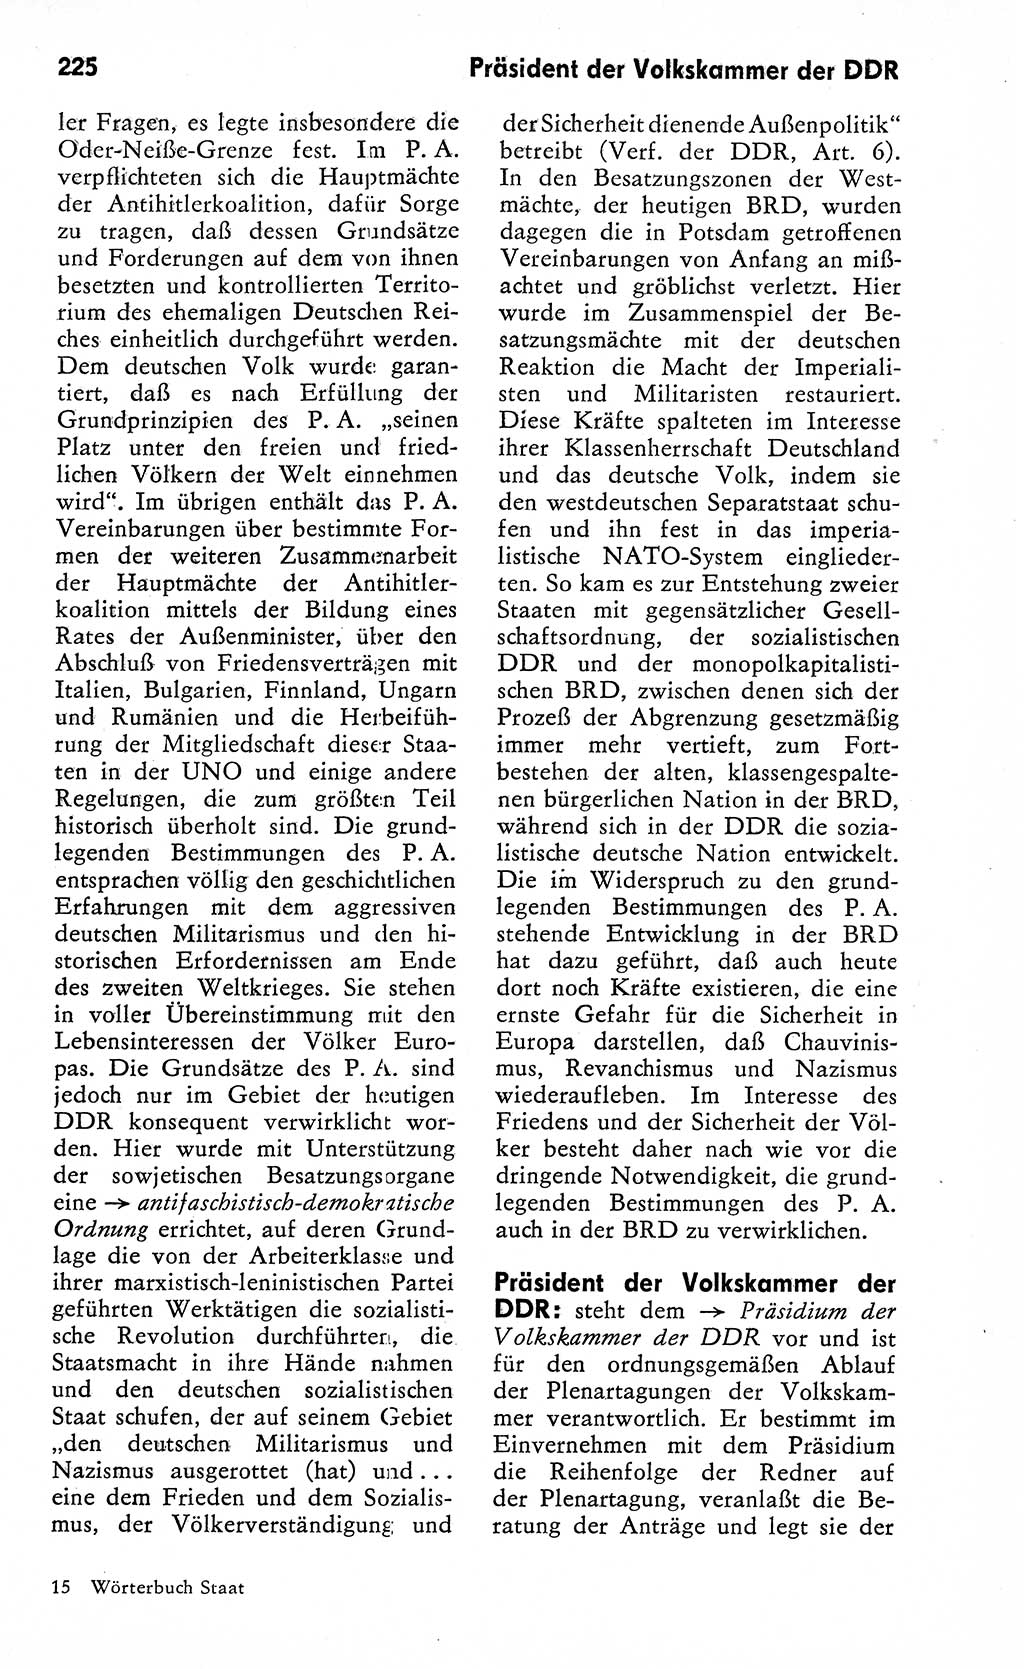 Wörterbuch zum sozialistischen Staat [Deutsche Demokratische Republik (DDR)] 1974, Seite 225 (Wb. soz. St. DDR 1974, S. 225)